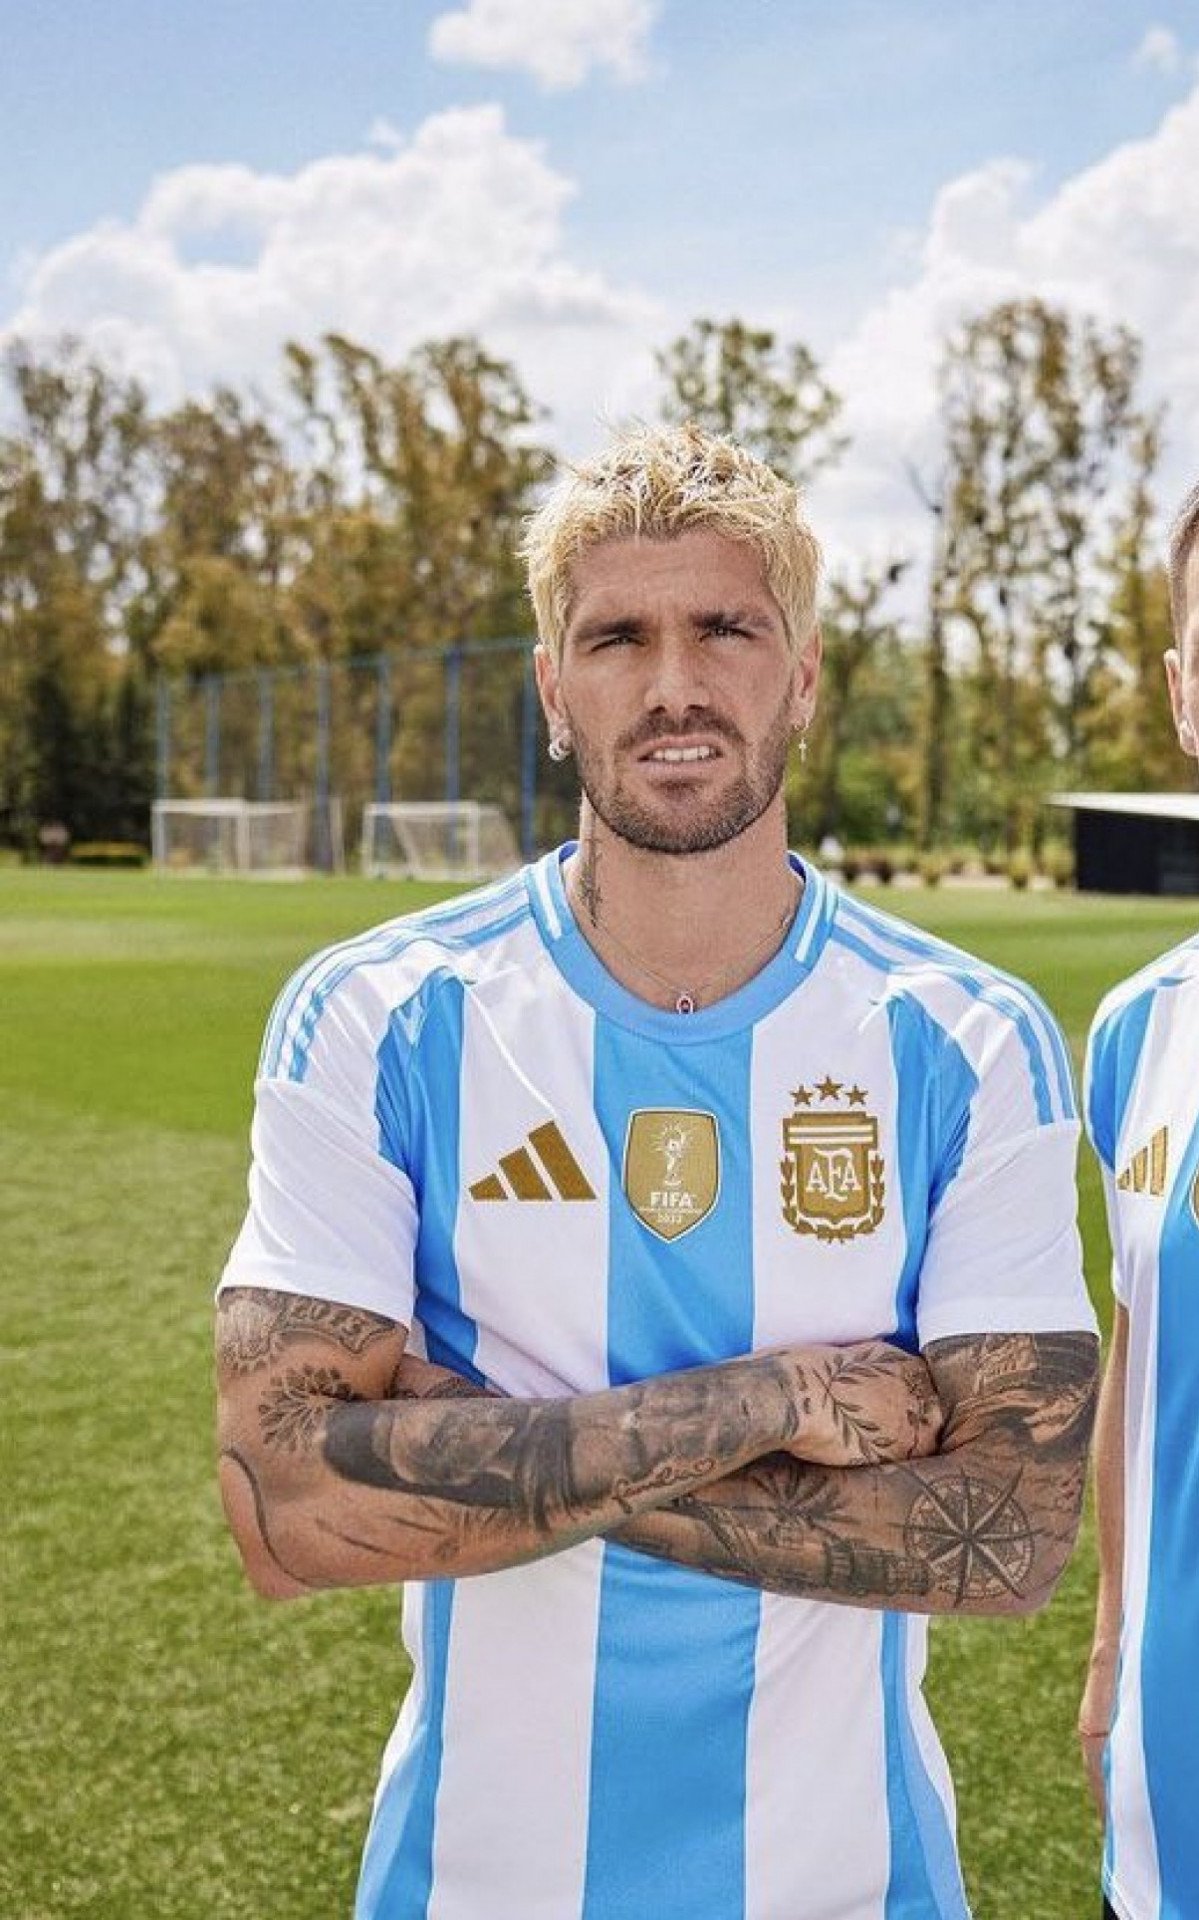 Camisa da Argentina tem o escudo dourado para combinar com o patch (marca especial) de atual campeão da Copa do Mundo - Divulgação